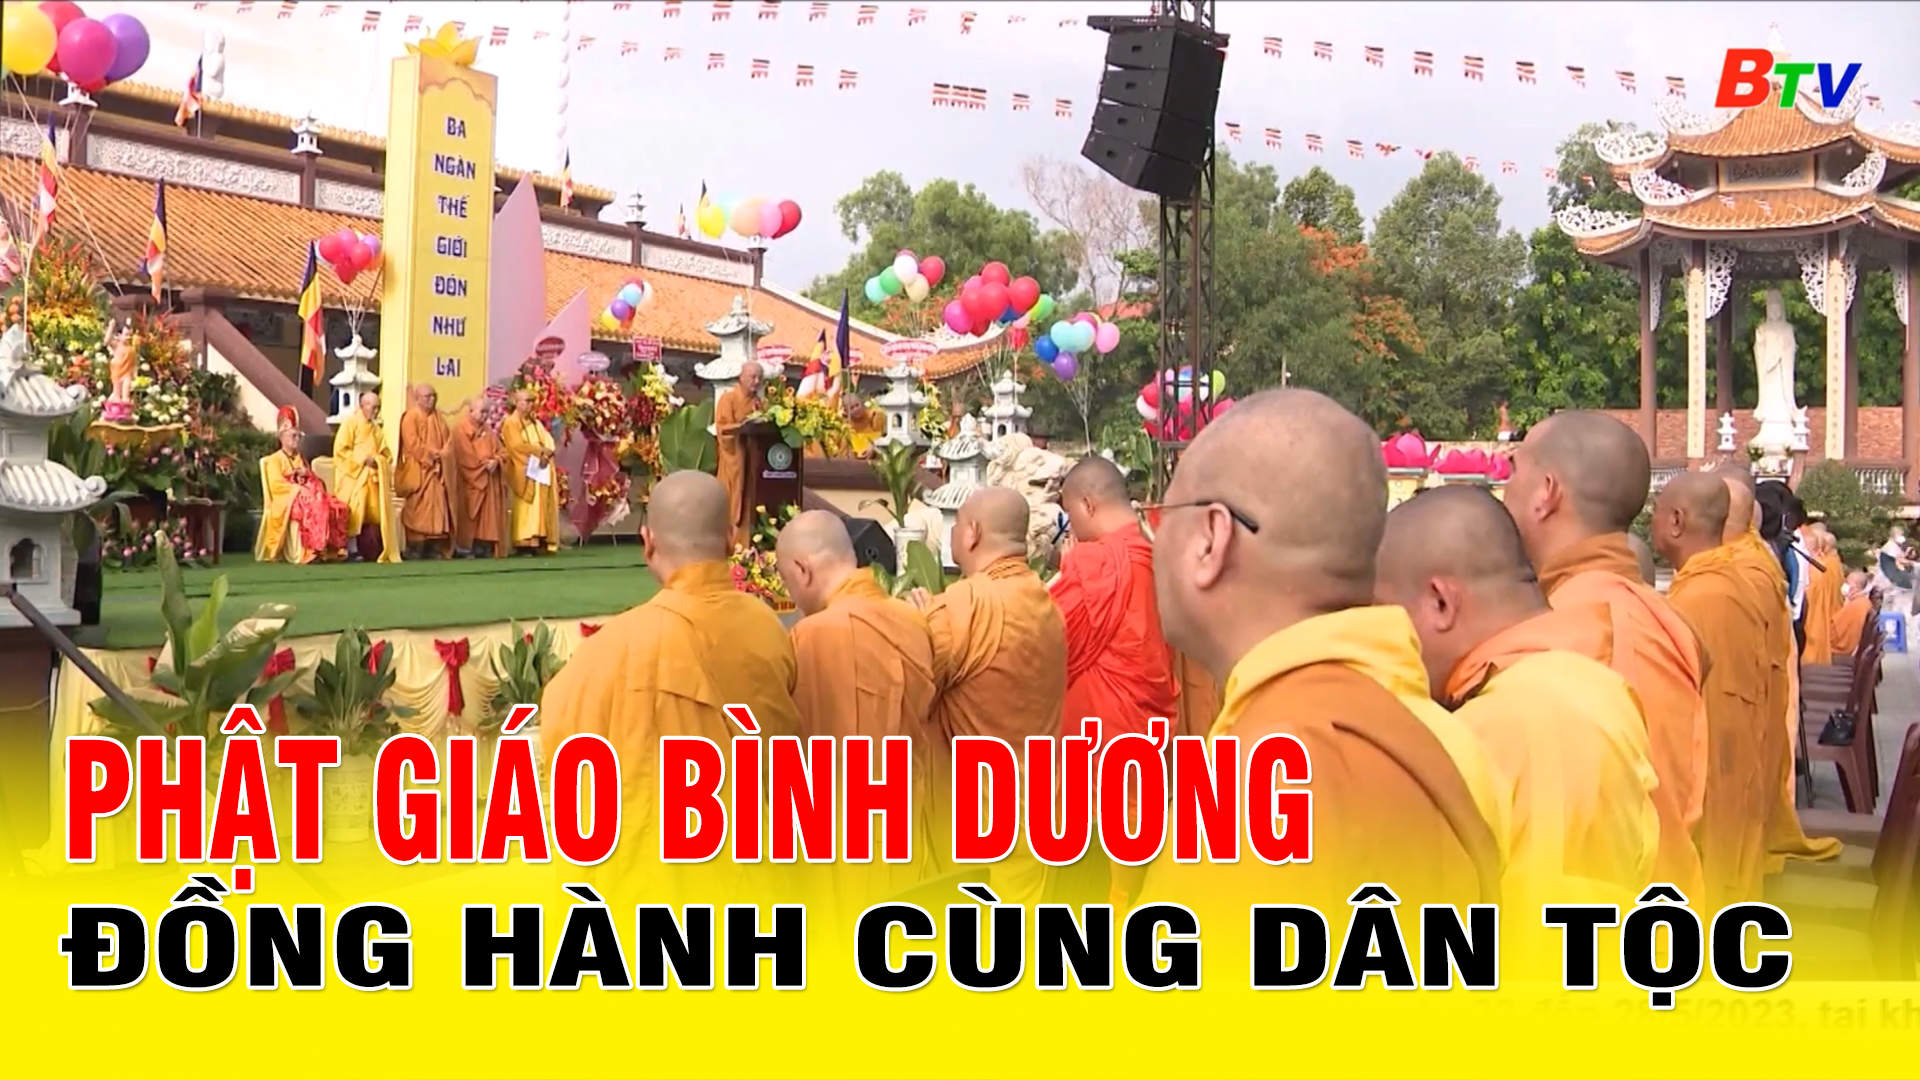 Phật giáo Bình Dương đồng hành cùng dân tộc